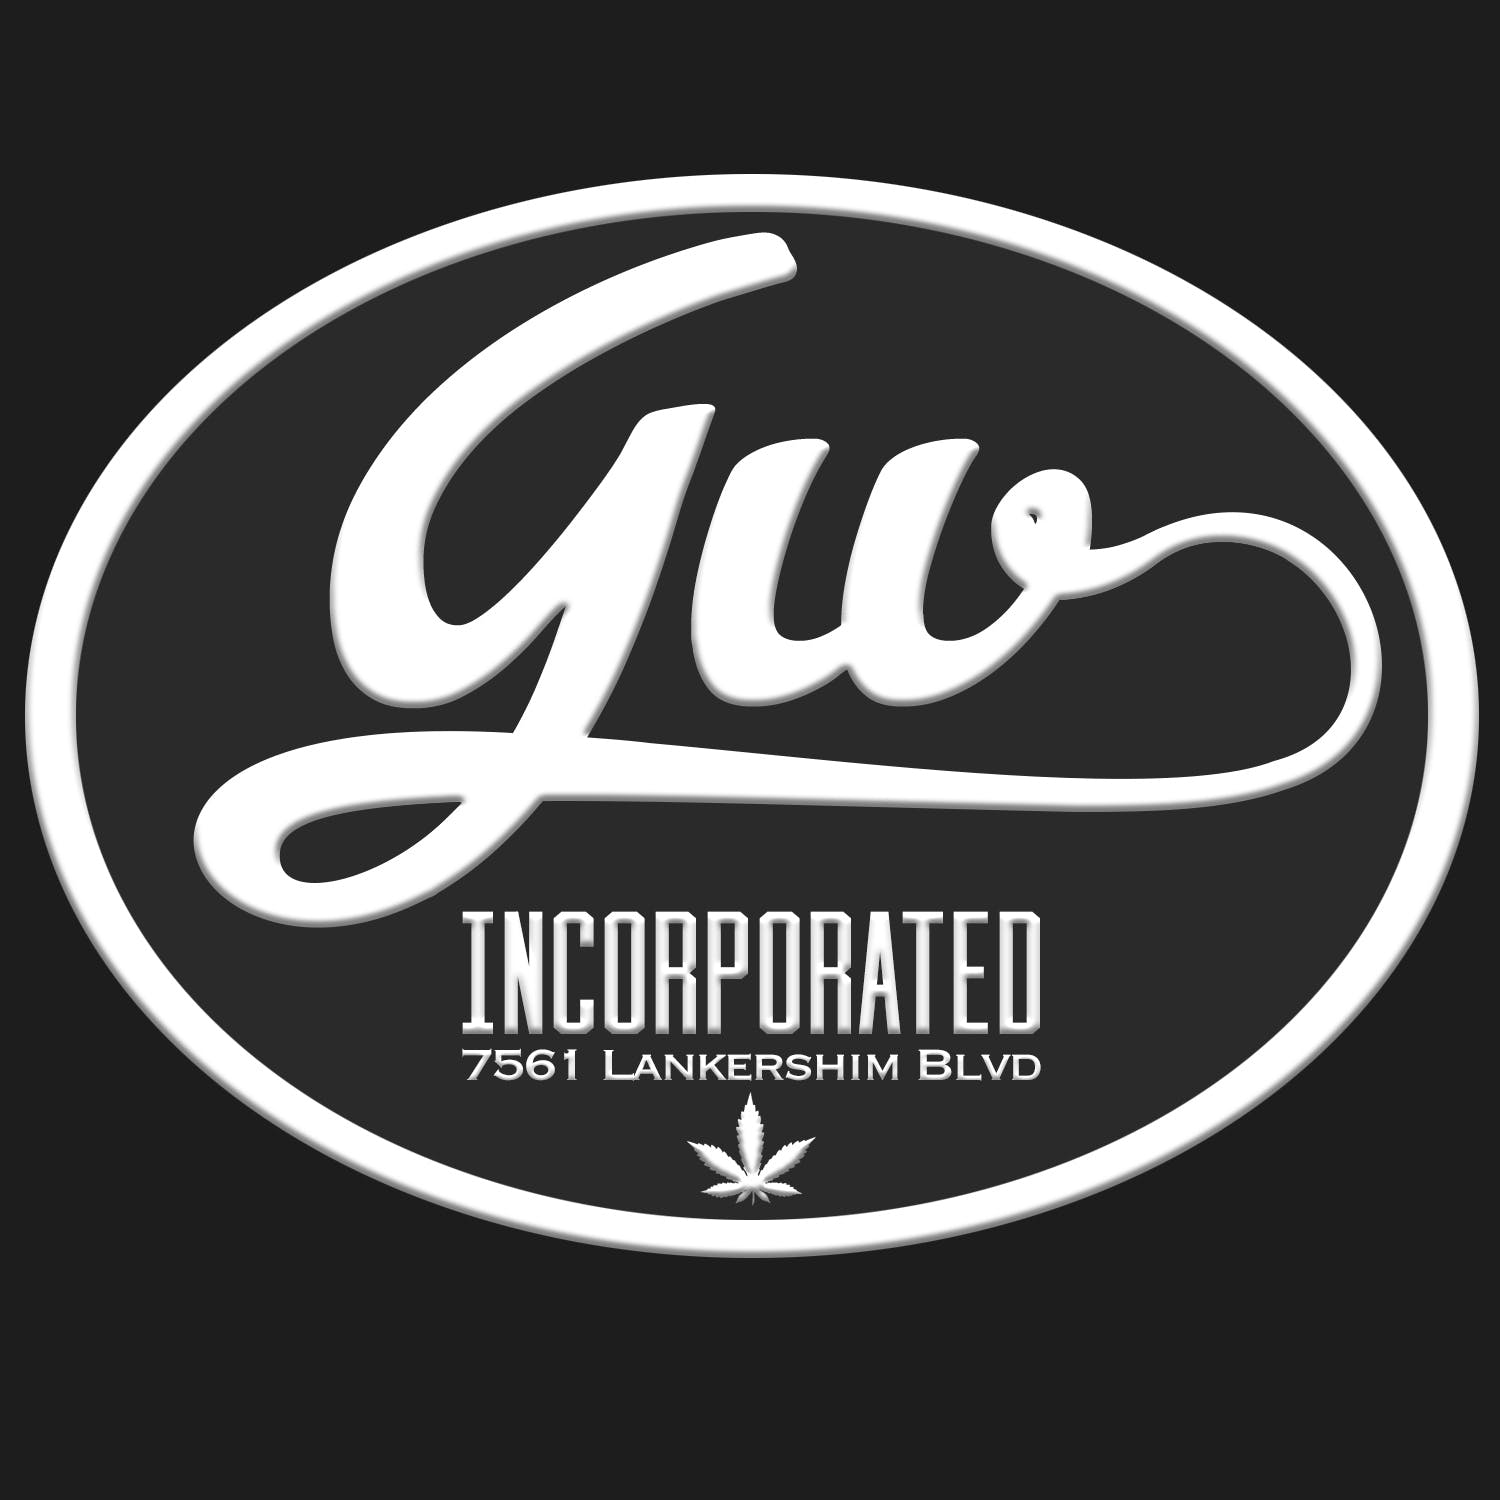 GW Inc - Medical Marijuana Doctors - Cannabizme.com